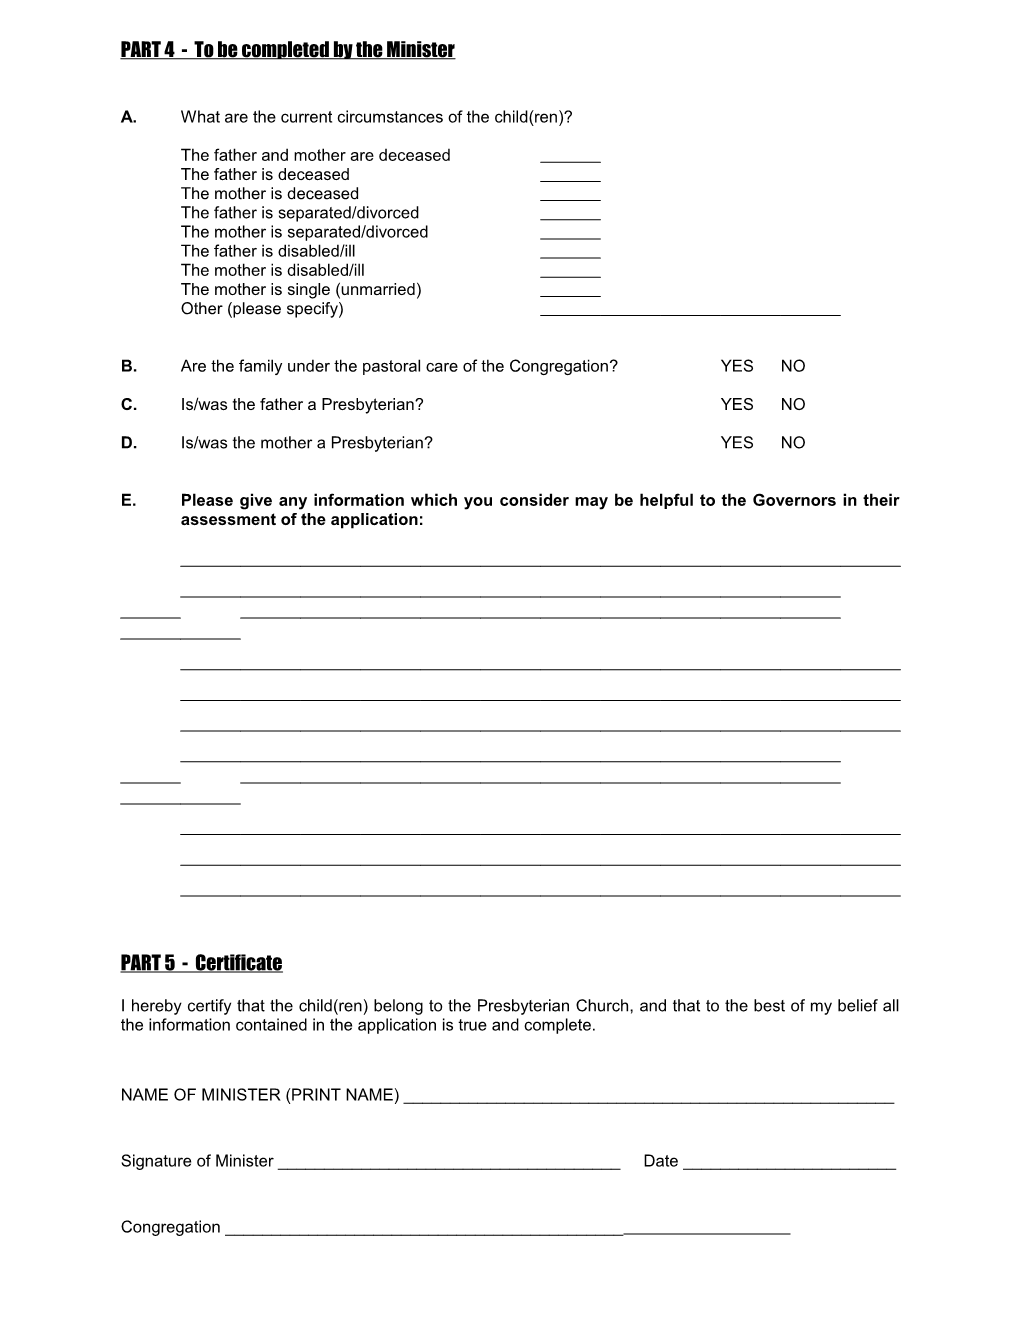 Regular Grant Application Form